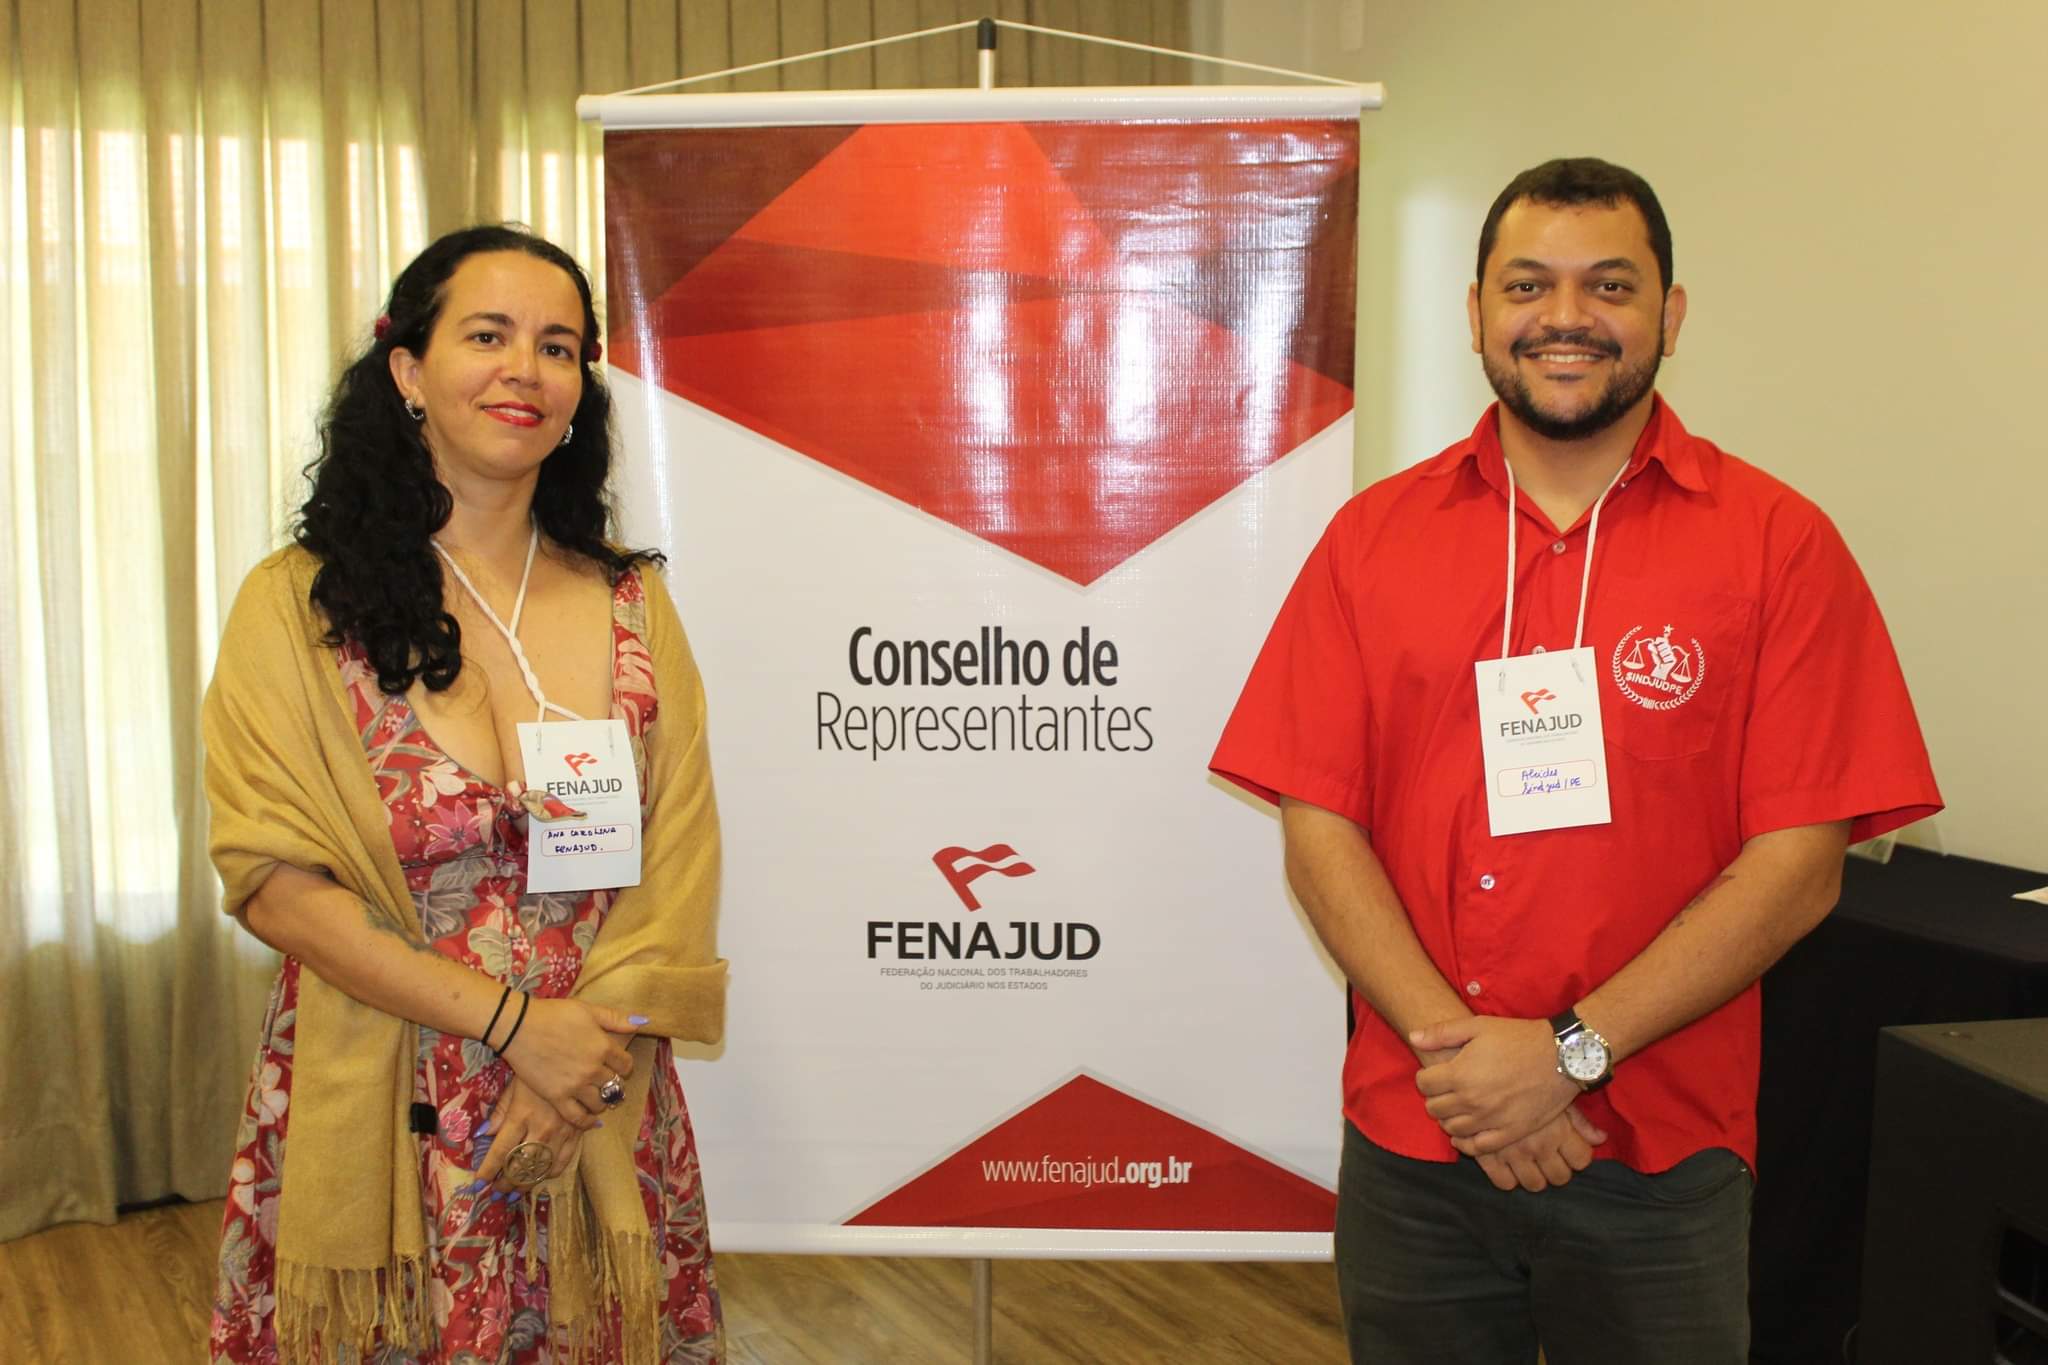 #PraCegoVer Fotografia reúne Ana Carolina Lôbo e Alcides Campelo, dirigentes do SINDJUD-PE, durante o Conselho de Representantes da FENAJUD, realizado no dia 11/11 na cidade de Foz do Iguaçu, no Paraná. 